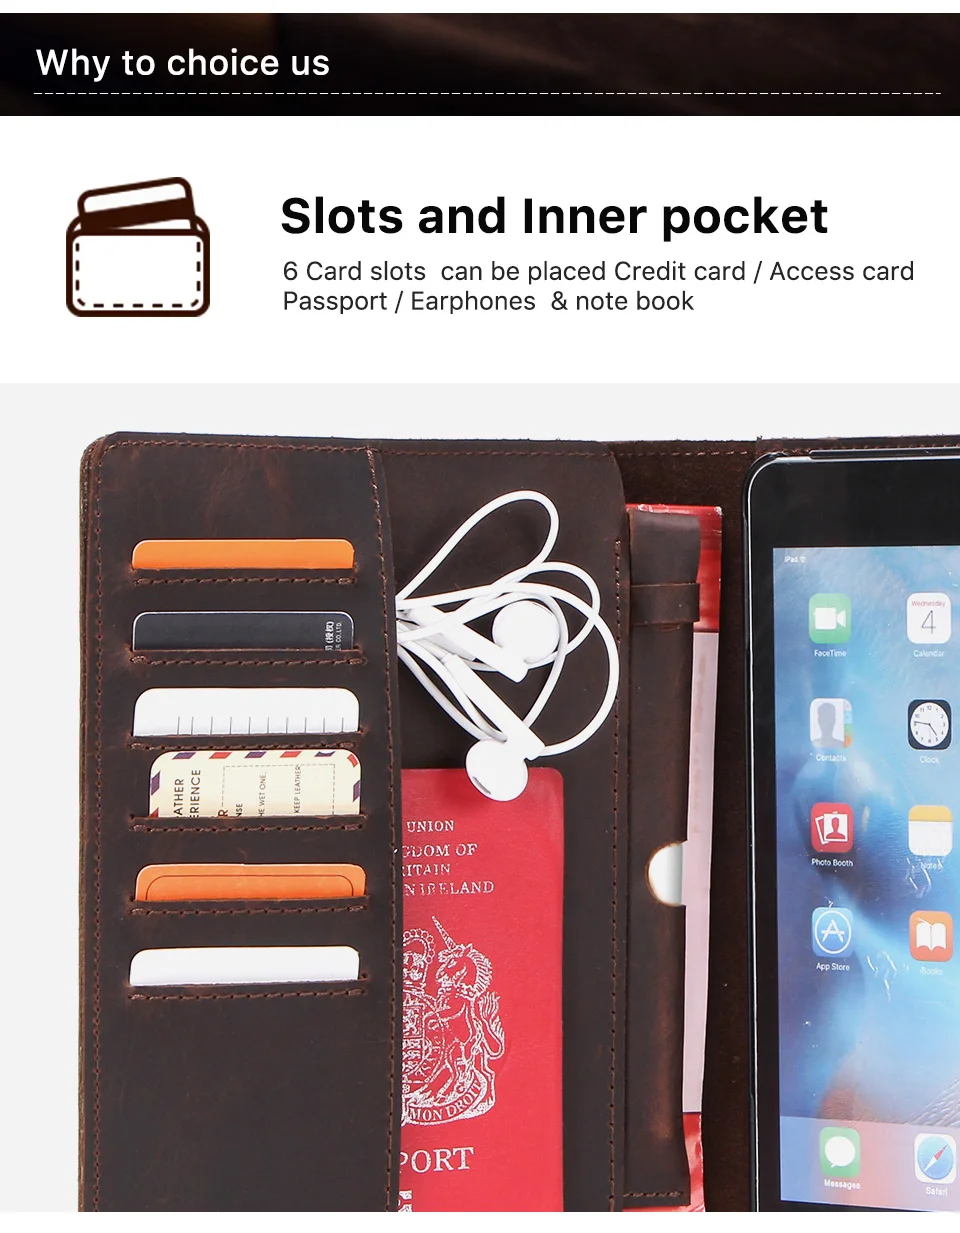 Ретро Чехол-книжка из нубука с маслом для iPad Pro 10,5 Air 3, чехол с отделениями для карт, карман, держатель карандаша, флип-чехол с подставкой